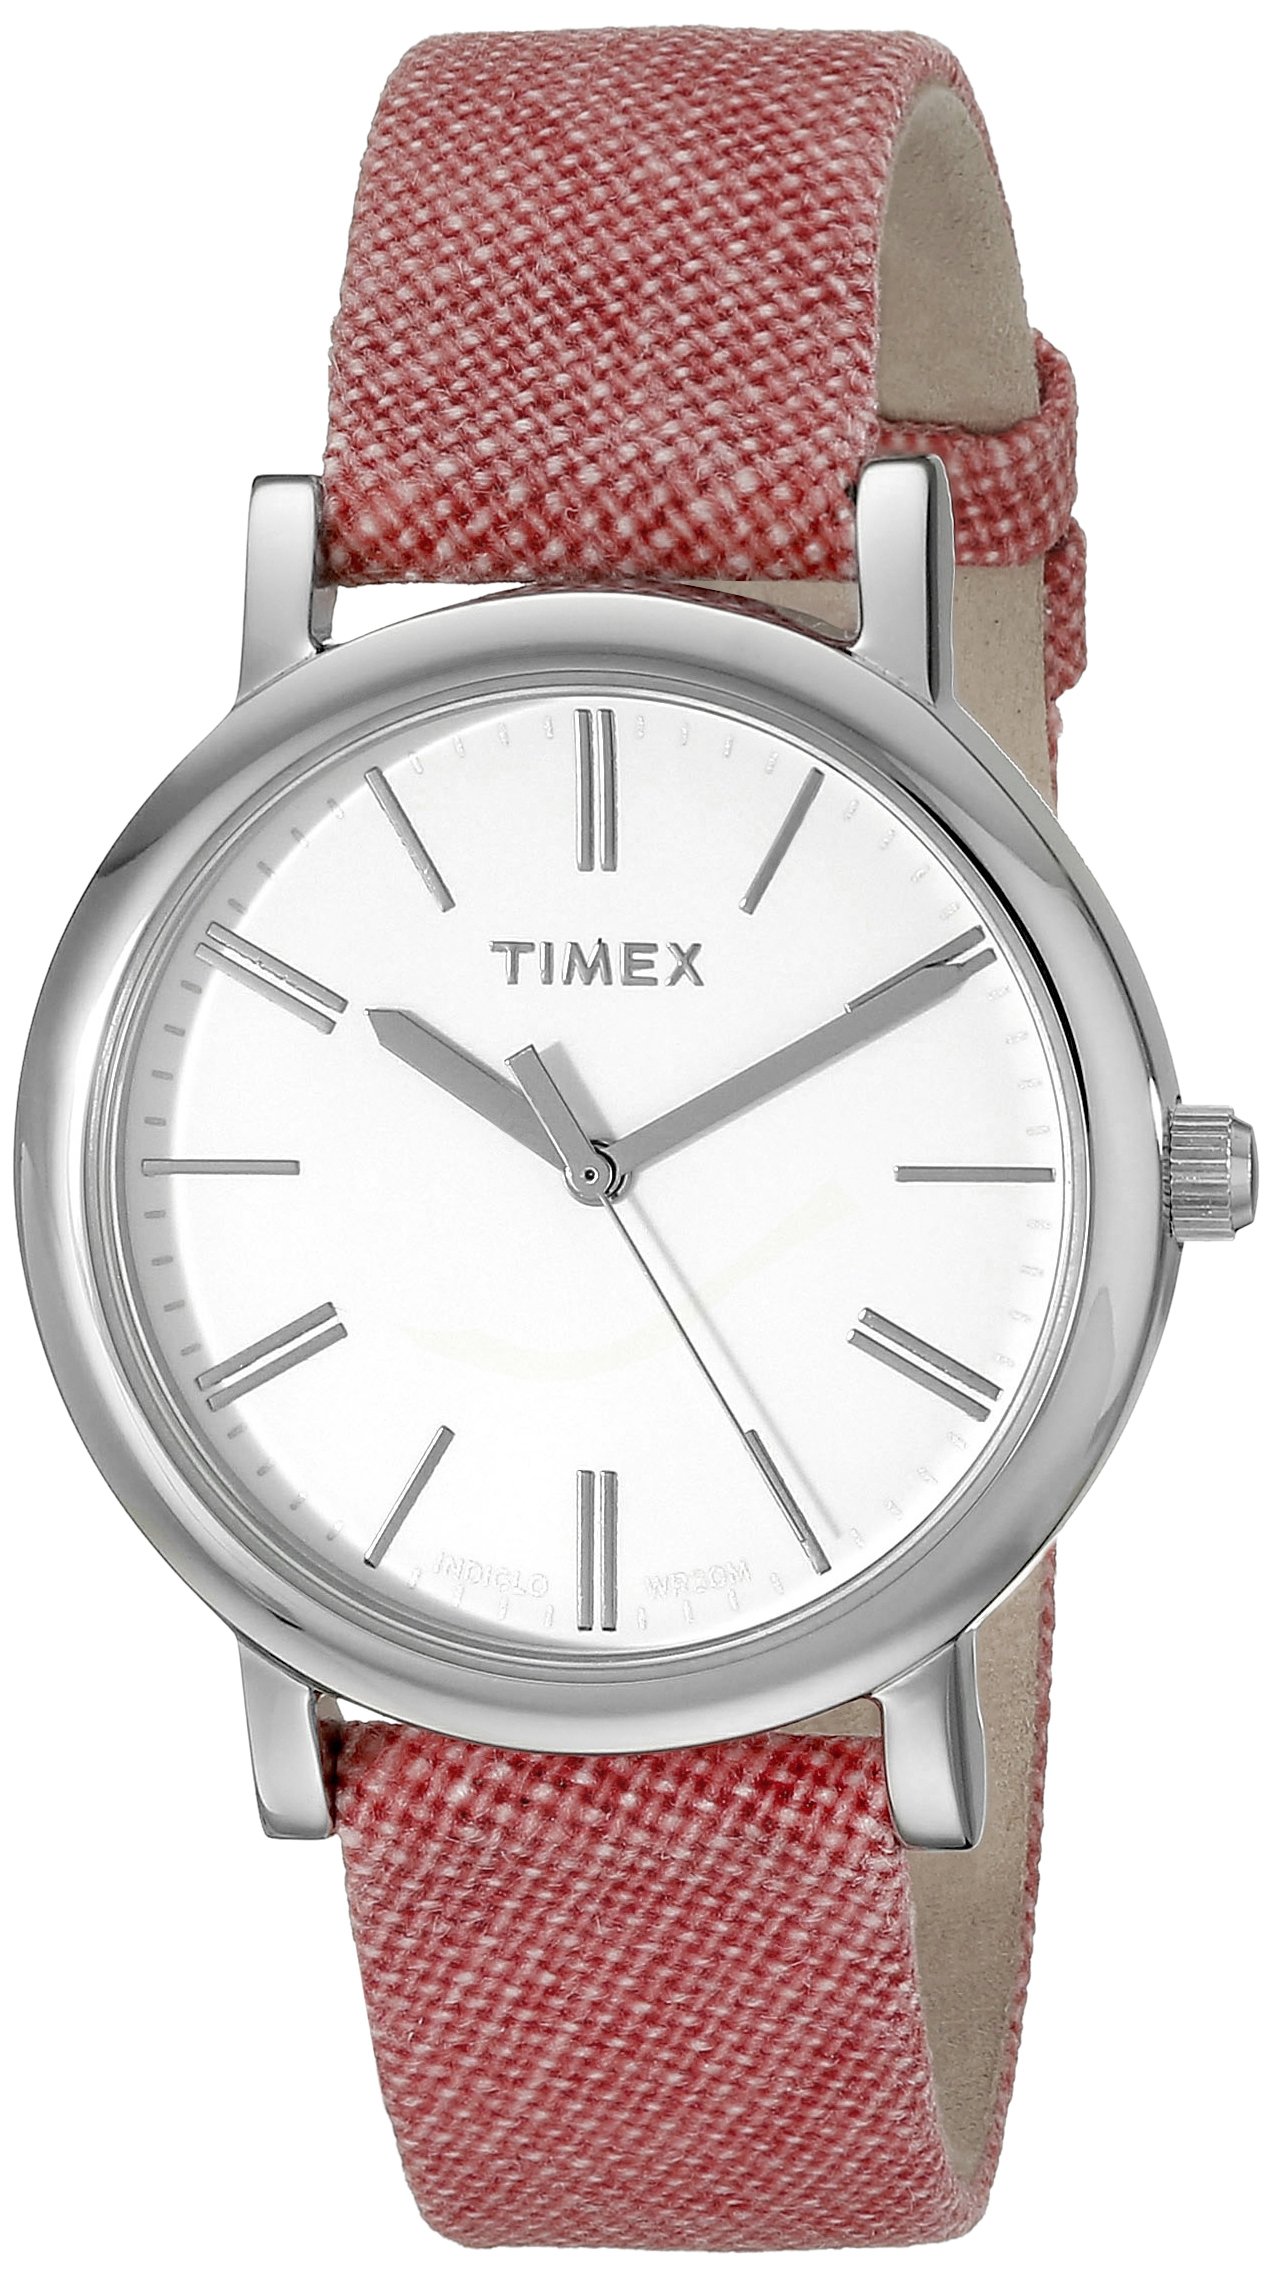 Timex Originals Watch